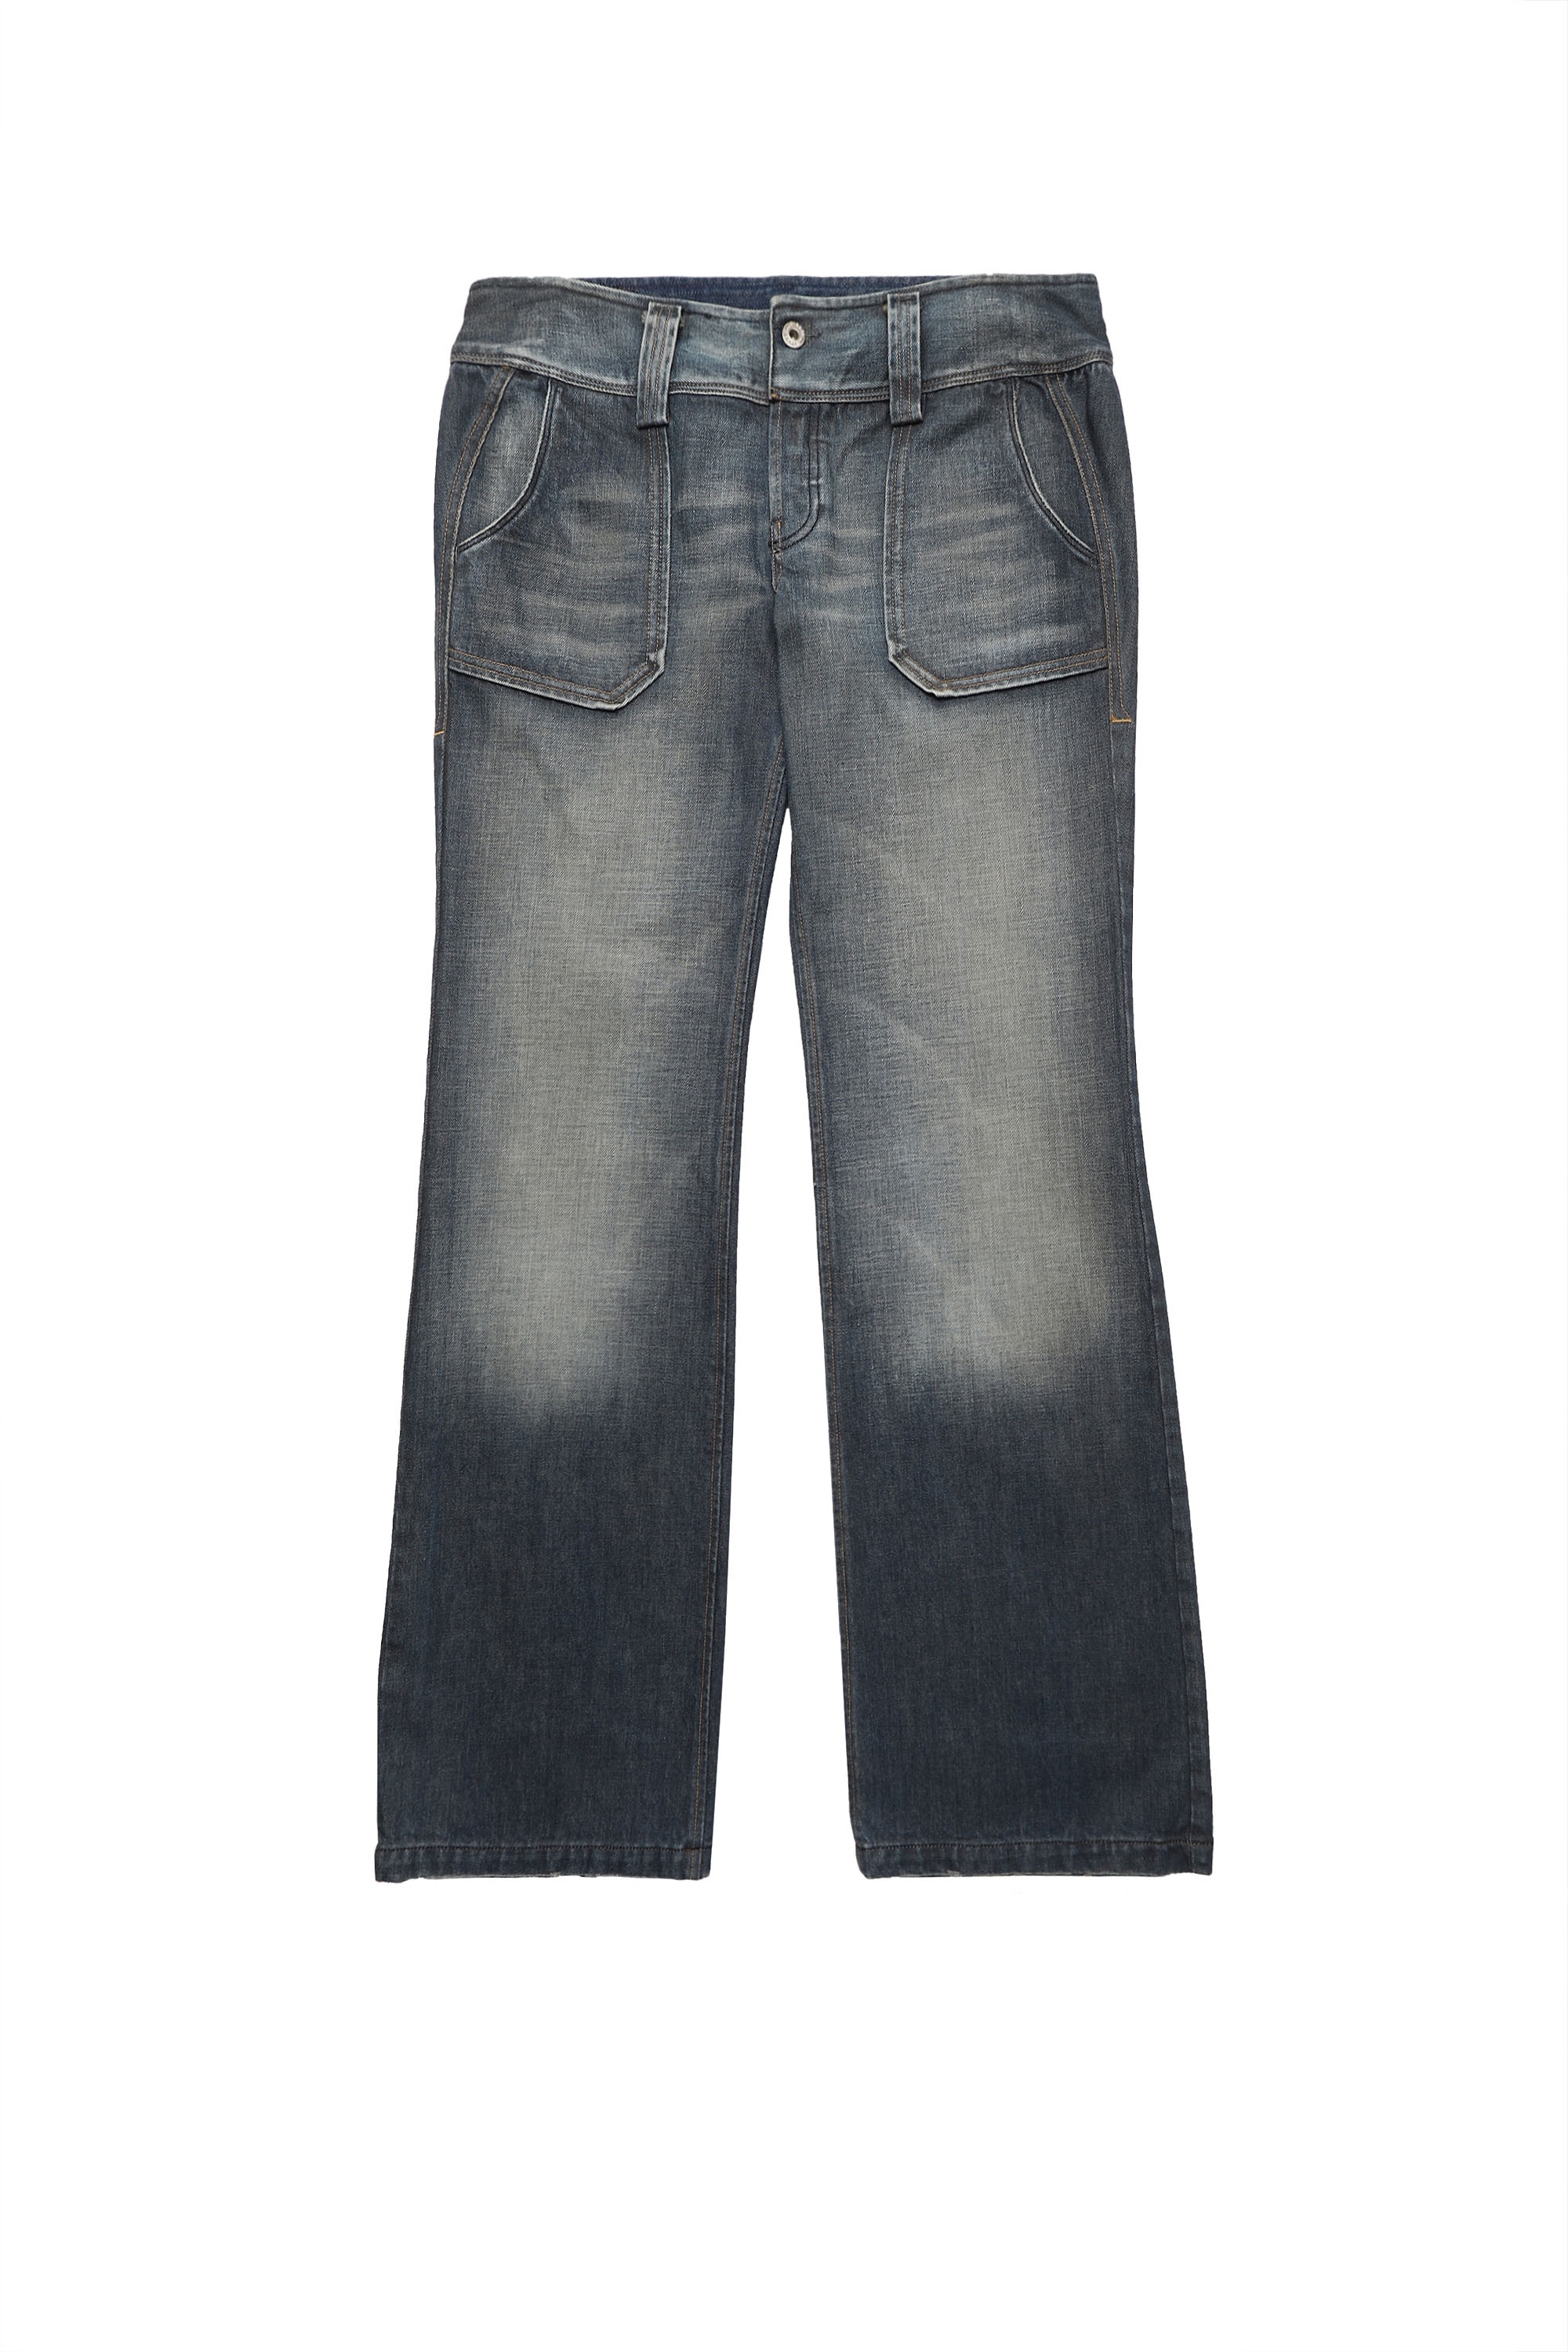 SH DENIM PANT, Dark Blue - Jeans